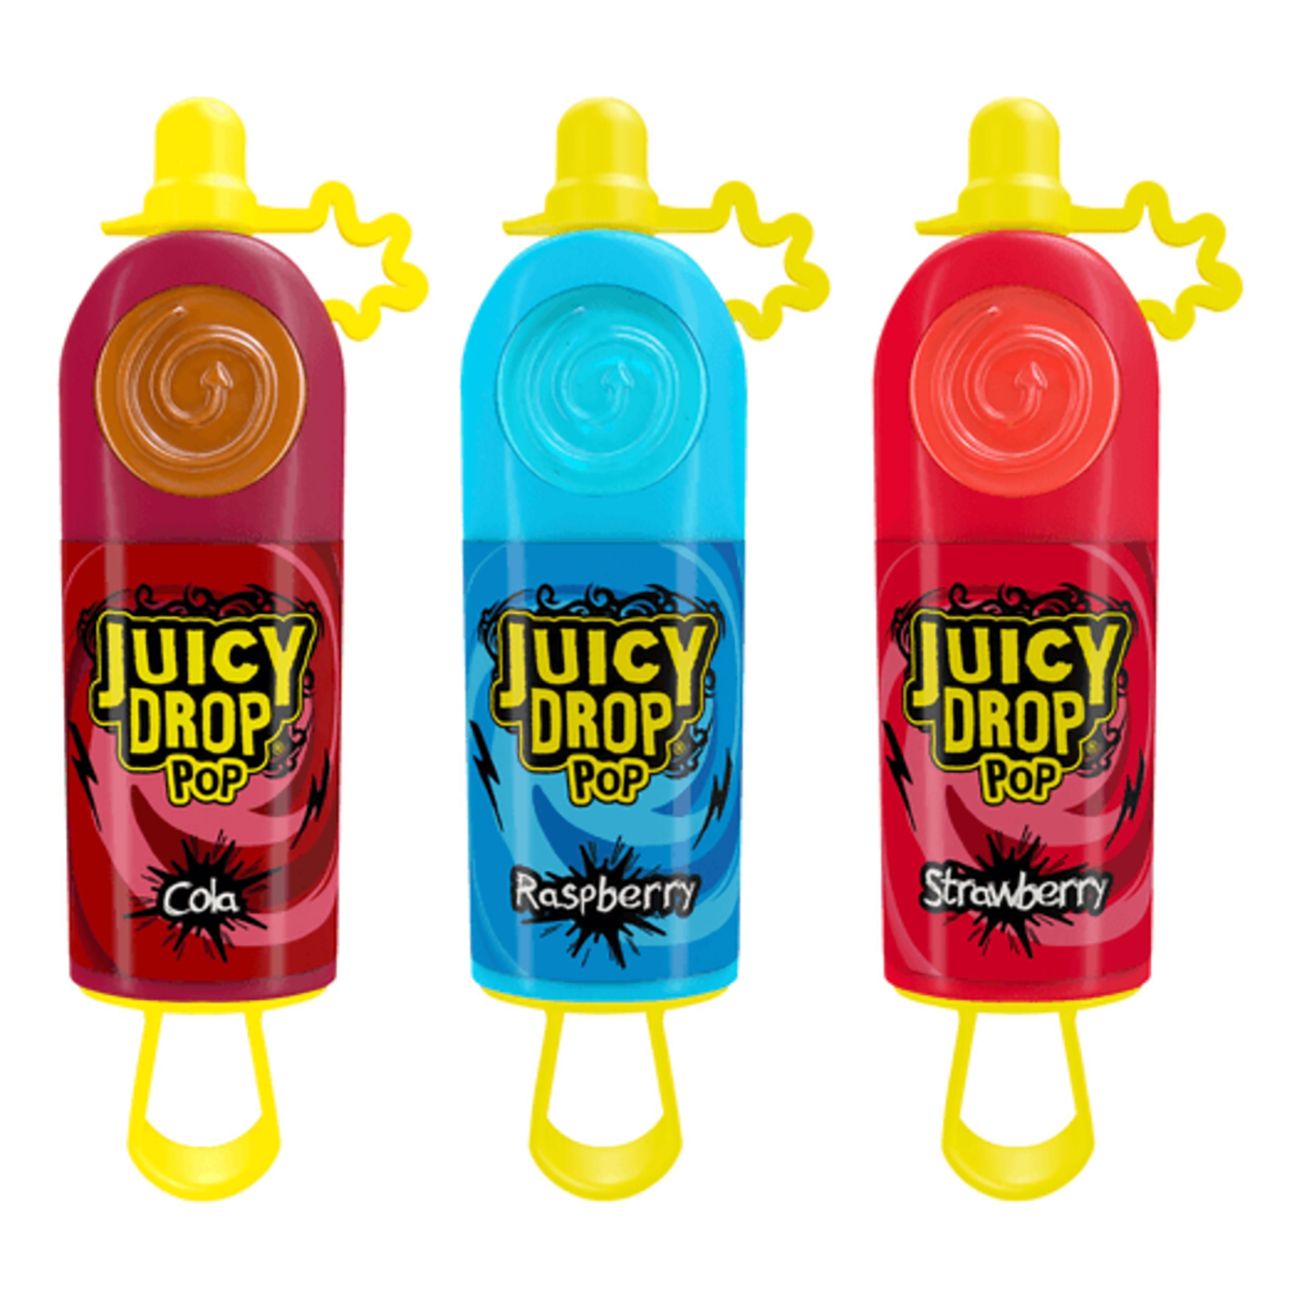 juicy-drop-pop-95441-1